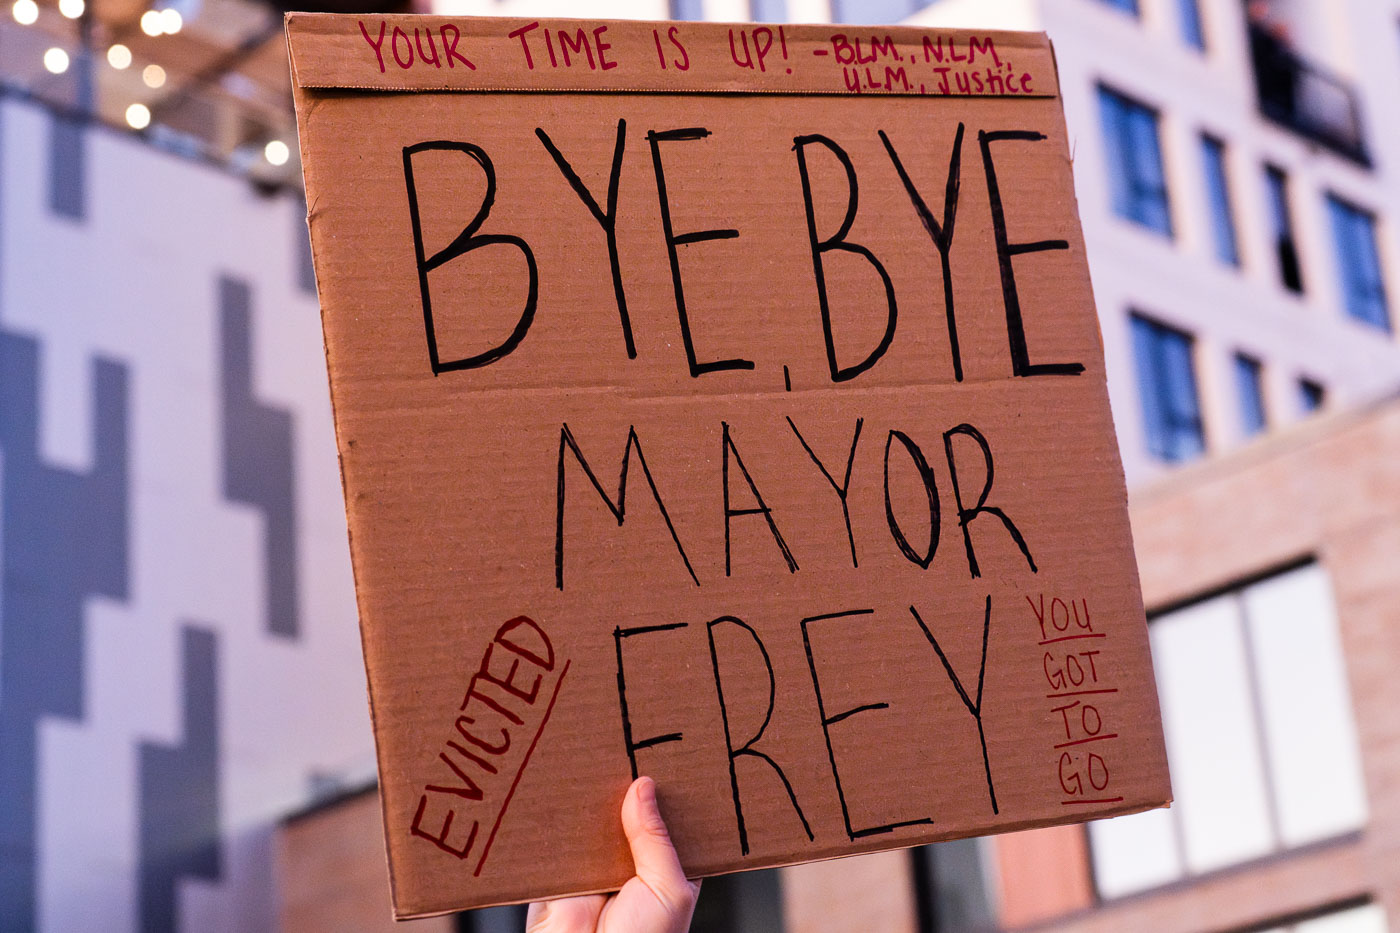 Bye Bye Mayor Frey